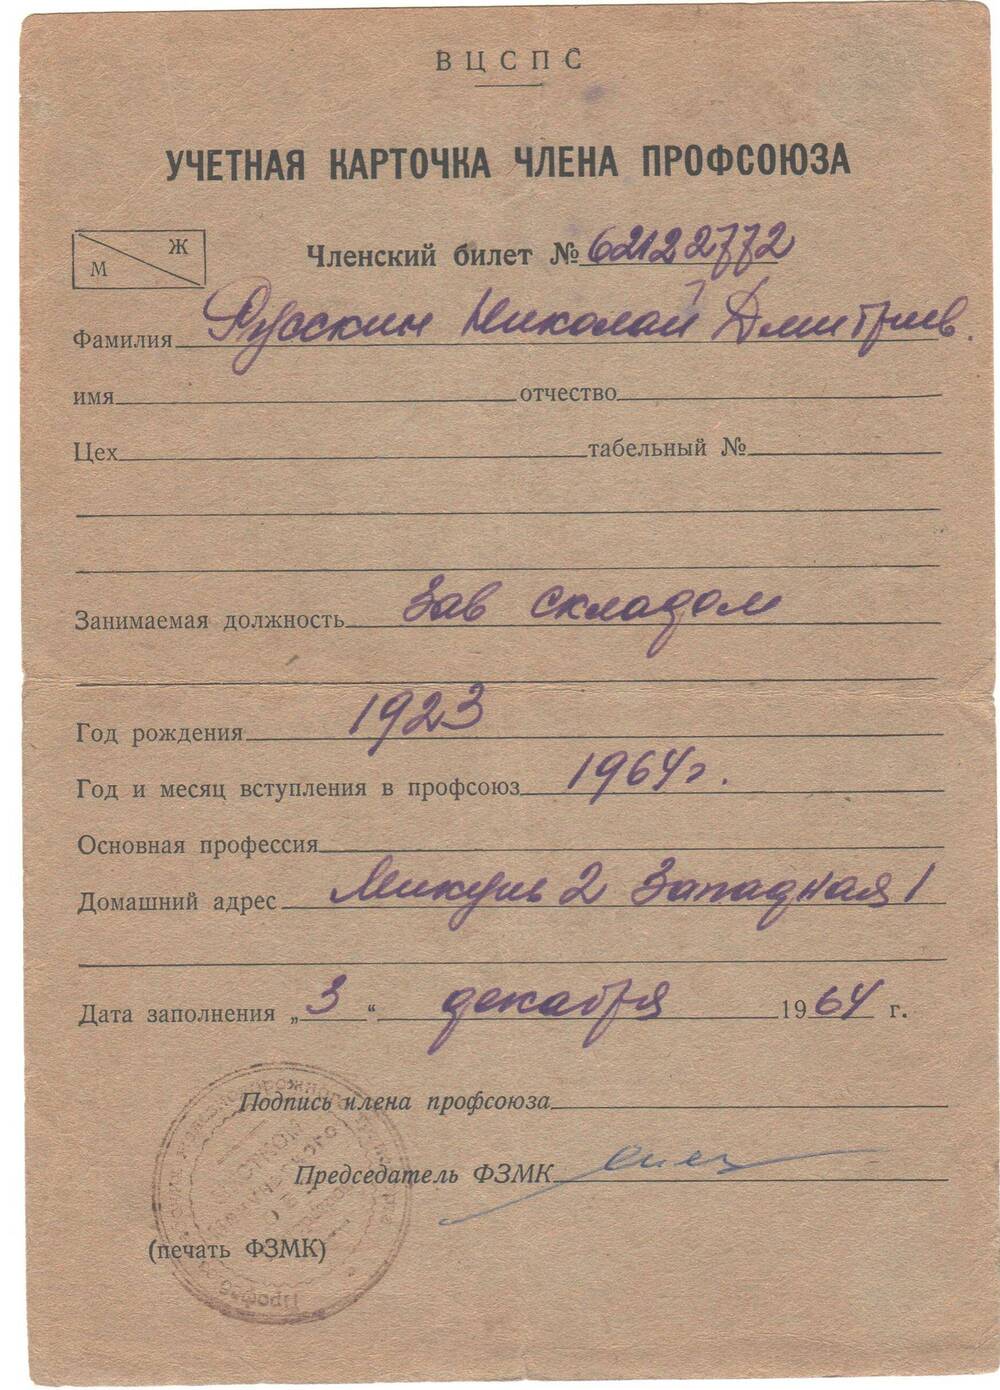 Учетная карточка члена профсоюза №62122772 Русскин Николай Дмитриевич, занимаемая должность зав. складом, год рождения 1923, год и месяц вступления в профсоюз 1964 г.